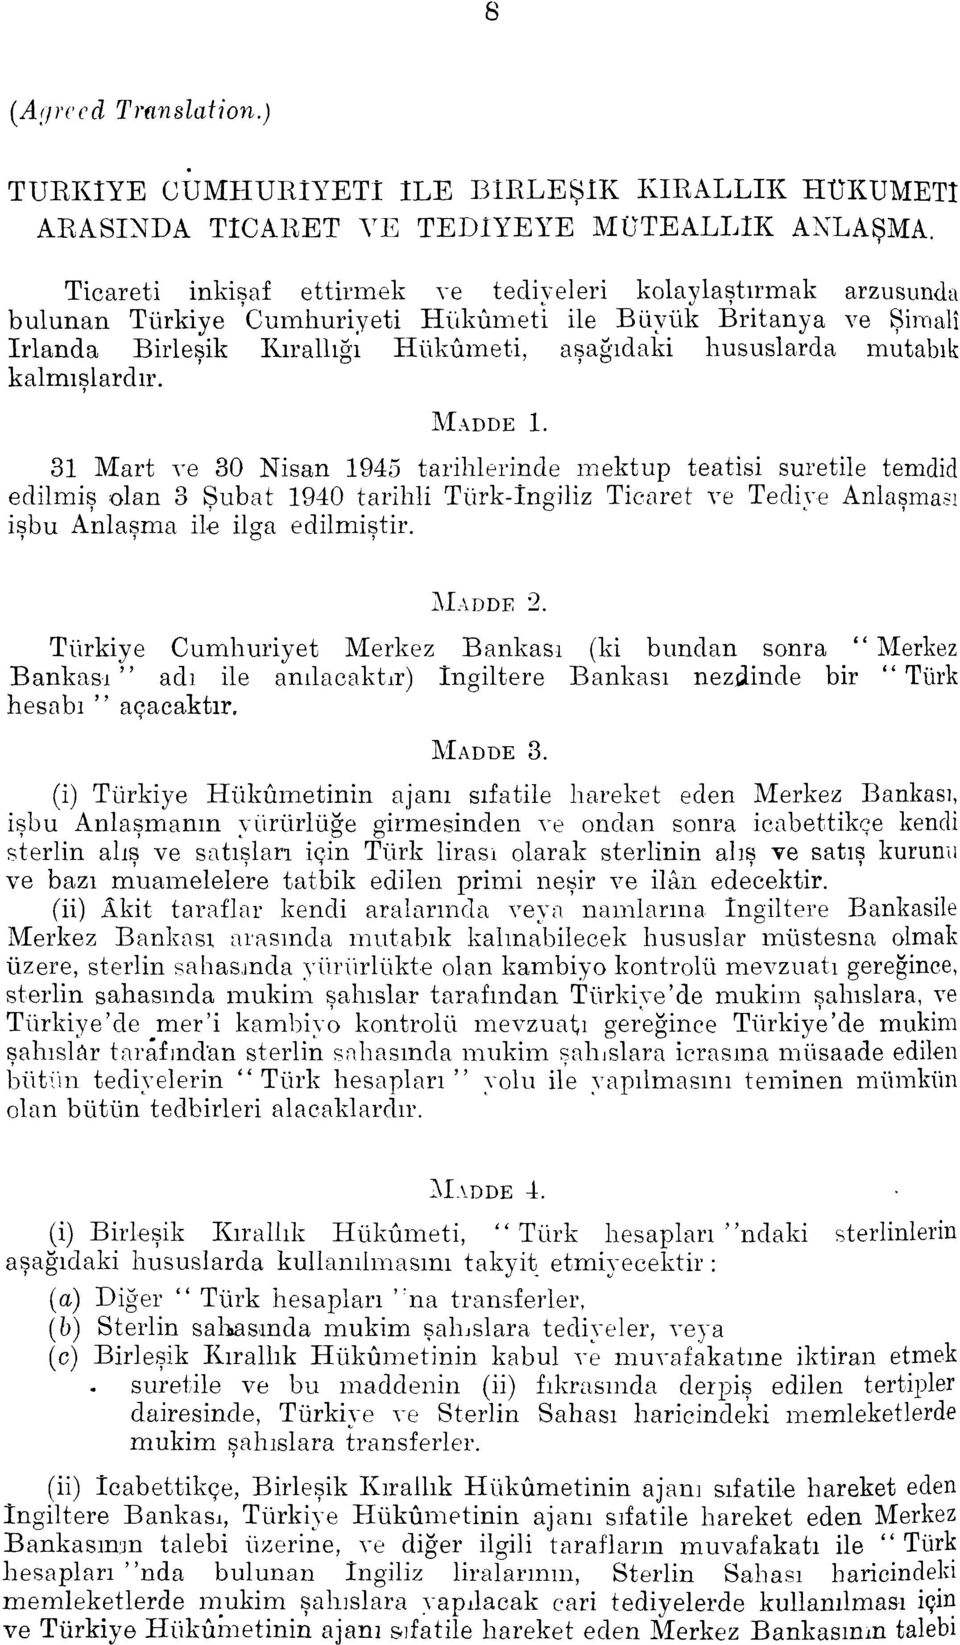 rnutabi1 kalmislardir. MADDE 1. 31 Mart ve 30 Nisan 1945 tarihlerinde rnektup teatisi suretile temdid edilmis olan 3 Subat 1940 tarihli Turk-Ingiliz Ticaret ve Tedive Anlasma.